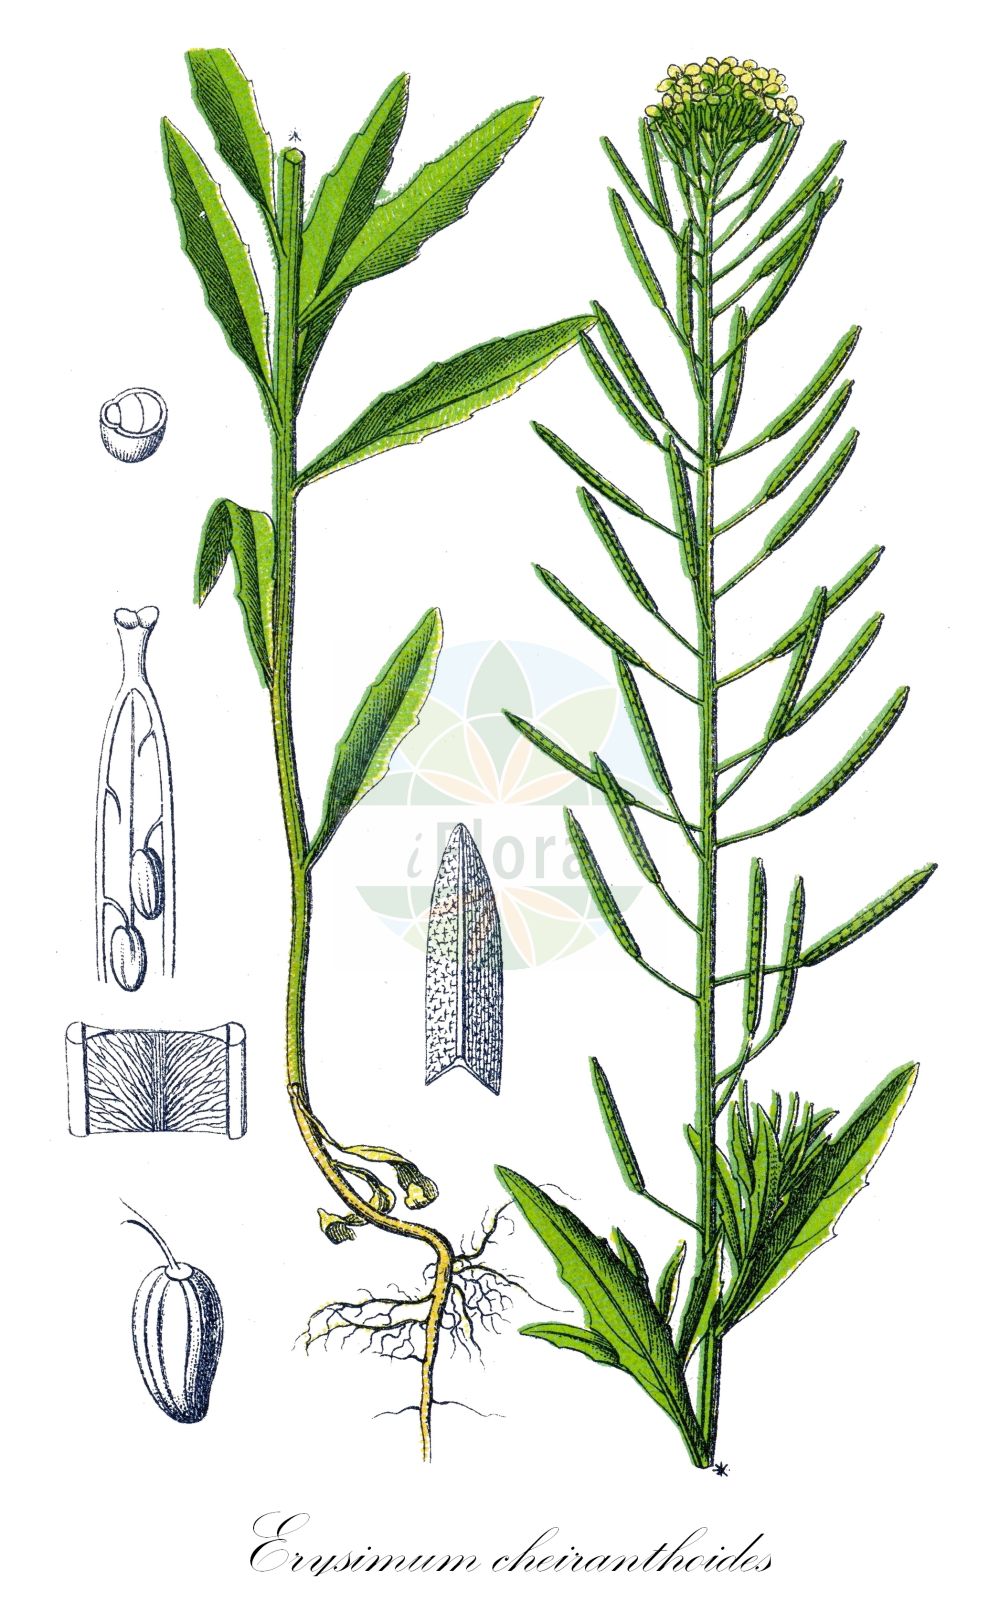 Historische Abbildung von Erysimum cheiranthoides (Acker-Schöterich - Treacle-mustard). Das Bild zeigt Blatt, Bluete, Frucht und Same. ---- Historical Drawing of Erysimum cheiranthoides (Acker-Schöterich - Treacle-mustard). The image is showing leaf, flower, fruit and seed.(Erysimum cheiranthoides,Acker-Schöterich,Treacle-mustard,Erysimum cheiranthoides,Acker-Schoeterich,Acker-Schotendotter,Treacle-mustard,Wormseed Wallflower,Wallflower Mustard,Wormseed Mustard,Erysimum,Schöterich,Wallflower,Brassicaceae,Kreuzblütler,Cabbage family,Blatt,Bluete,Frucht,Same,leaf,flower,fruit,seed,Sturm (1796f))